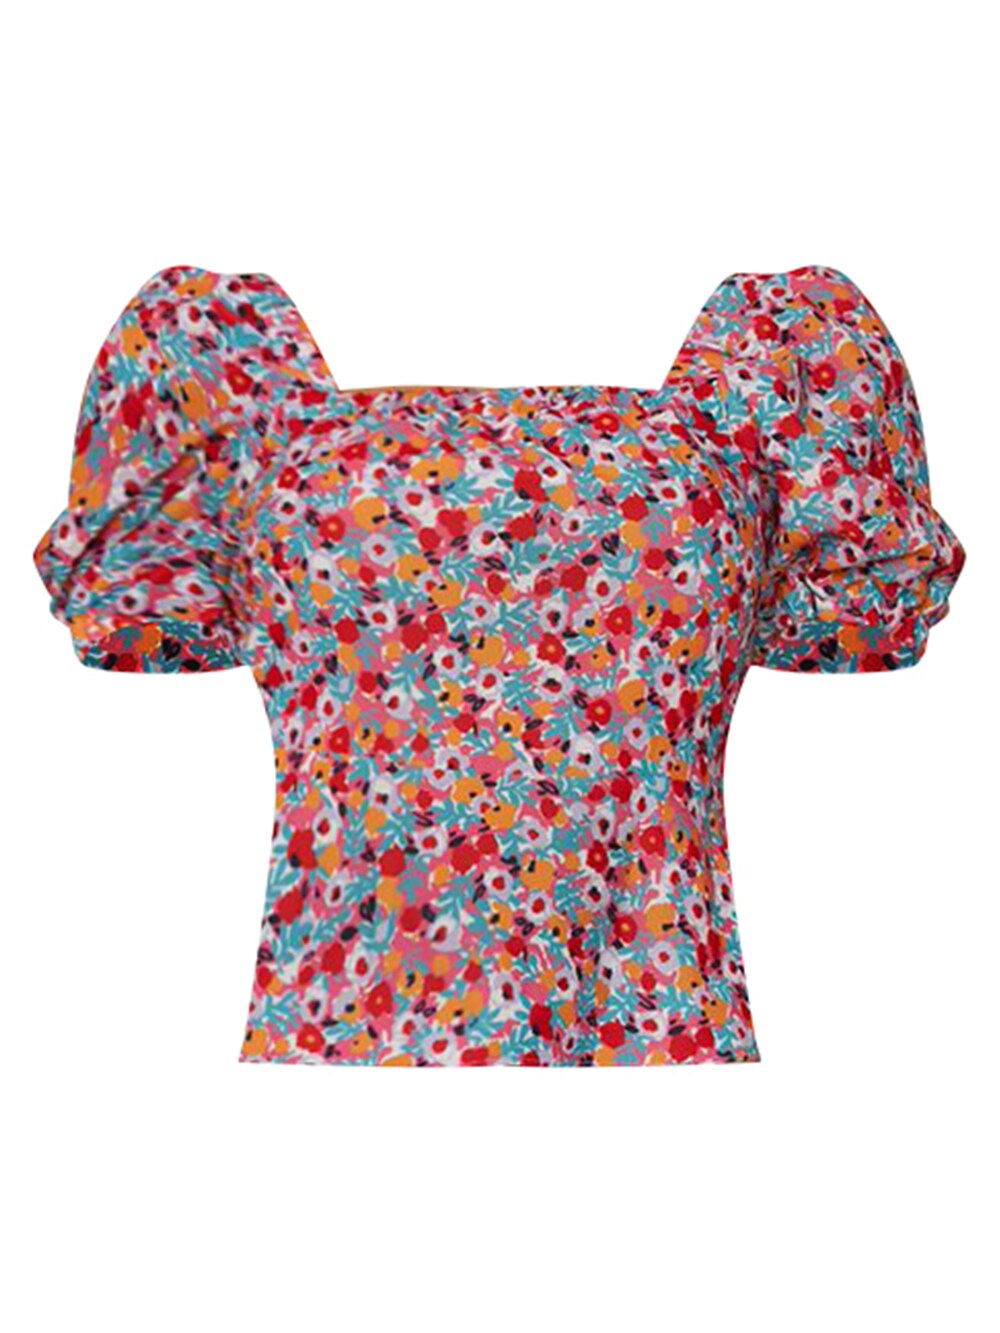 Блузка Chi Chi, смешанные цвета